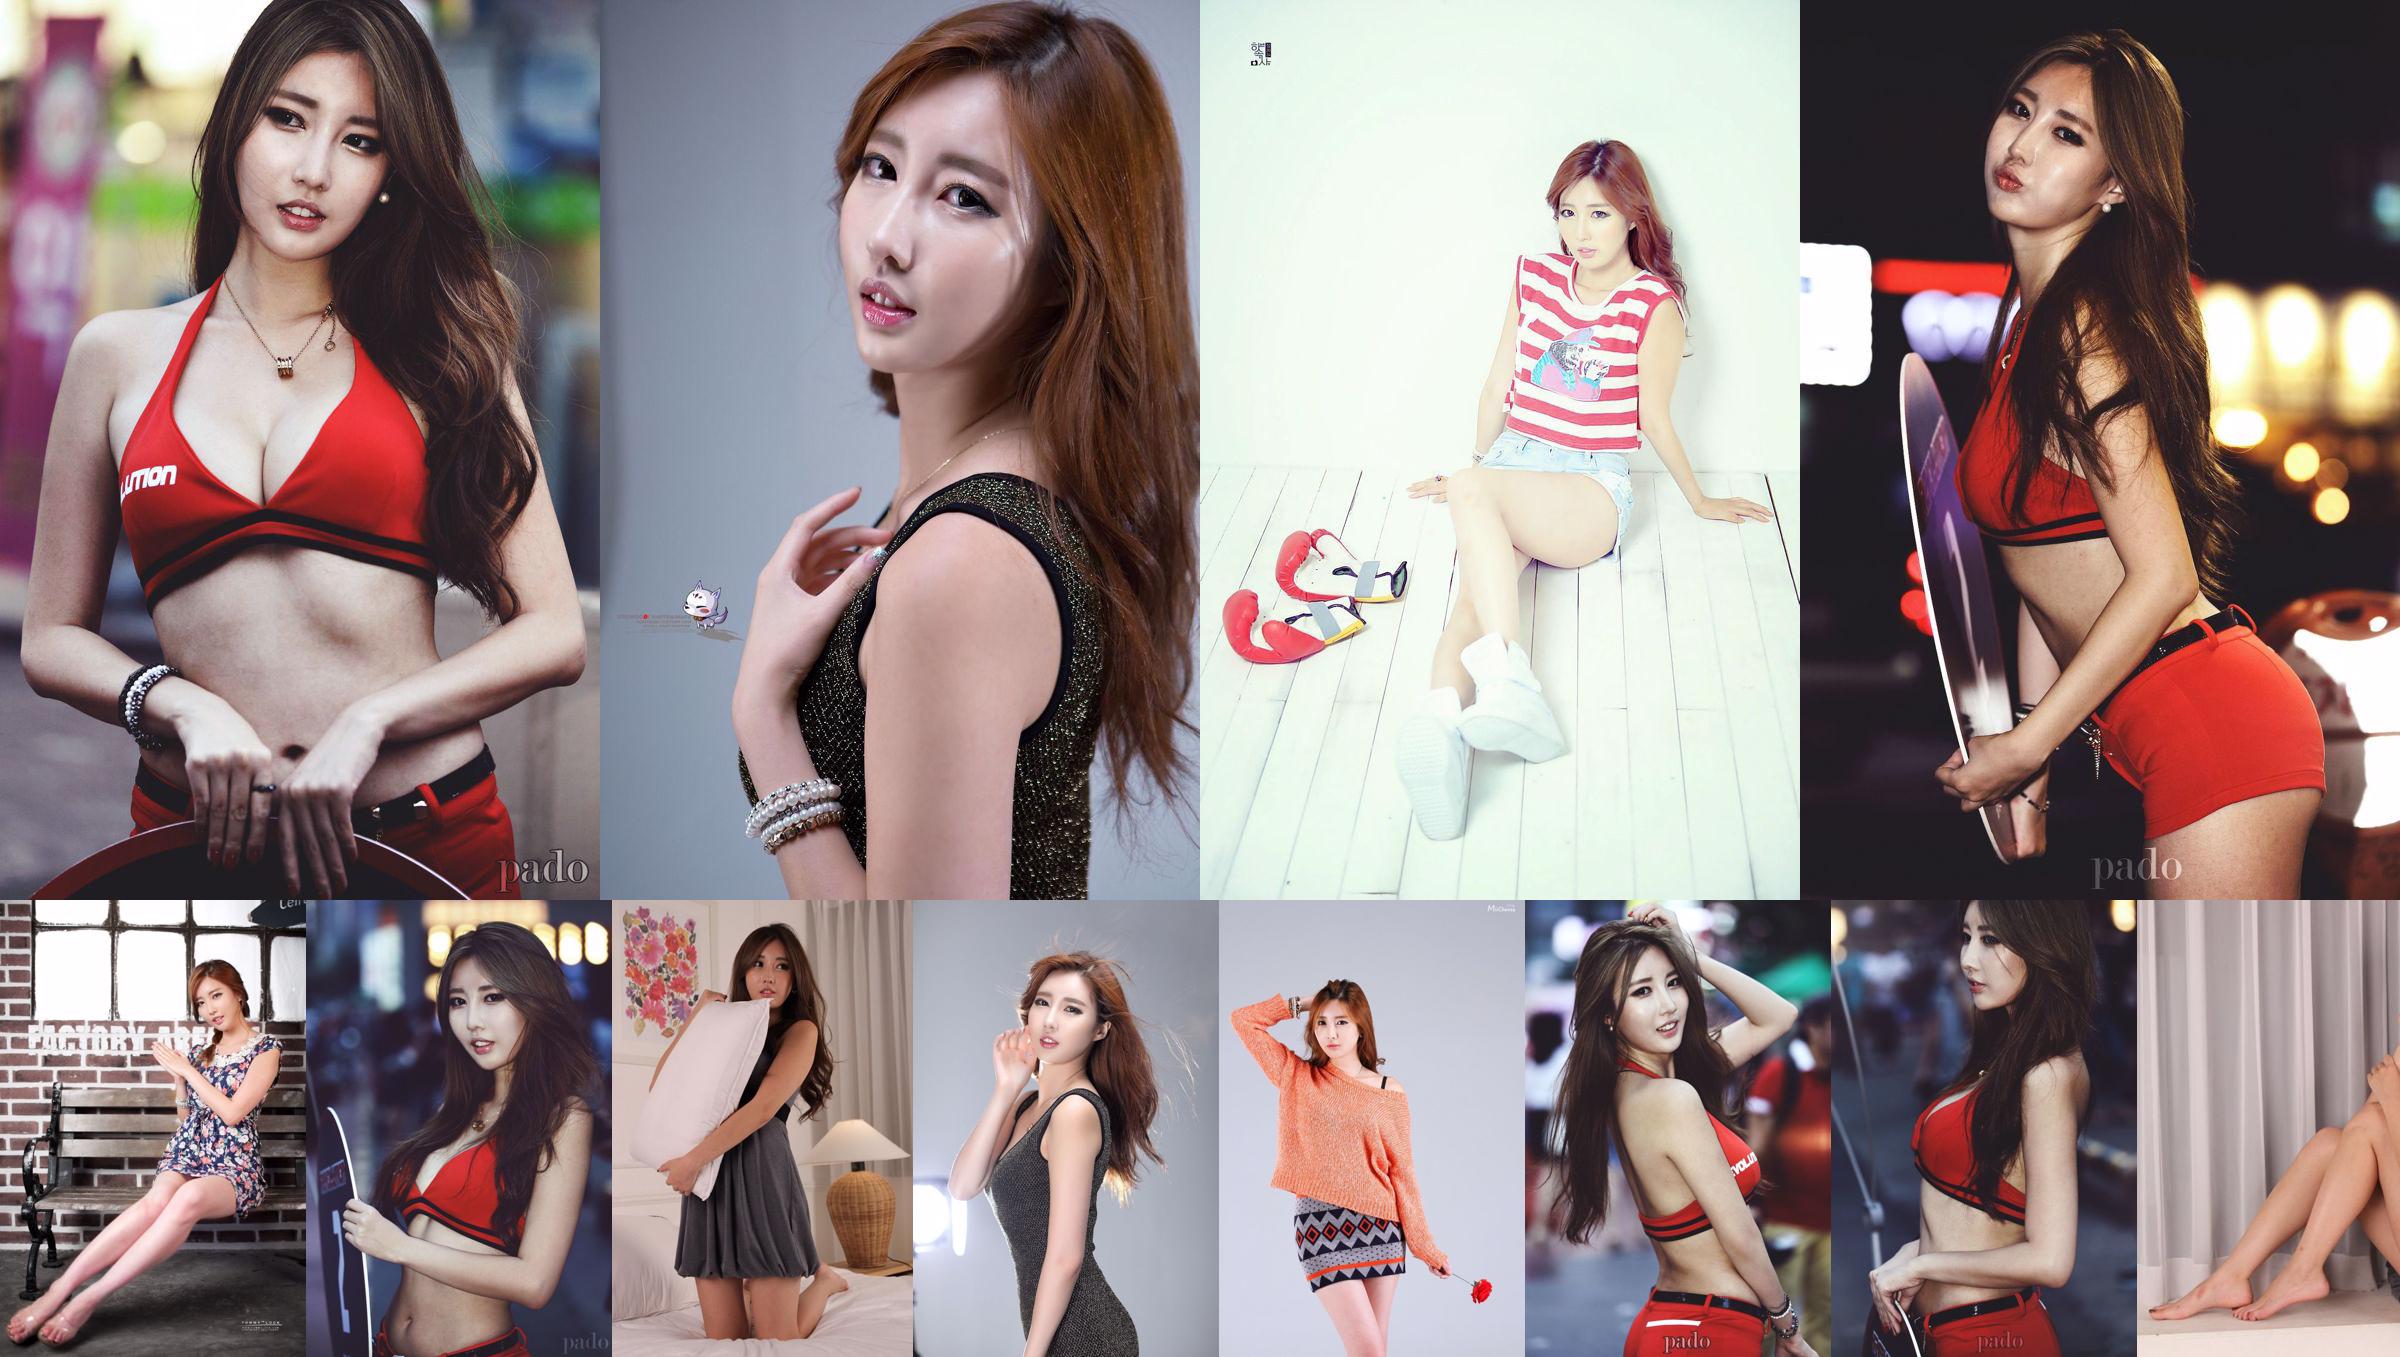 Korean beauty Shin Se Ha "Picture Collection" Part 2 No.953a0d Page 1